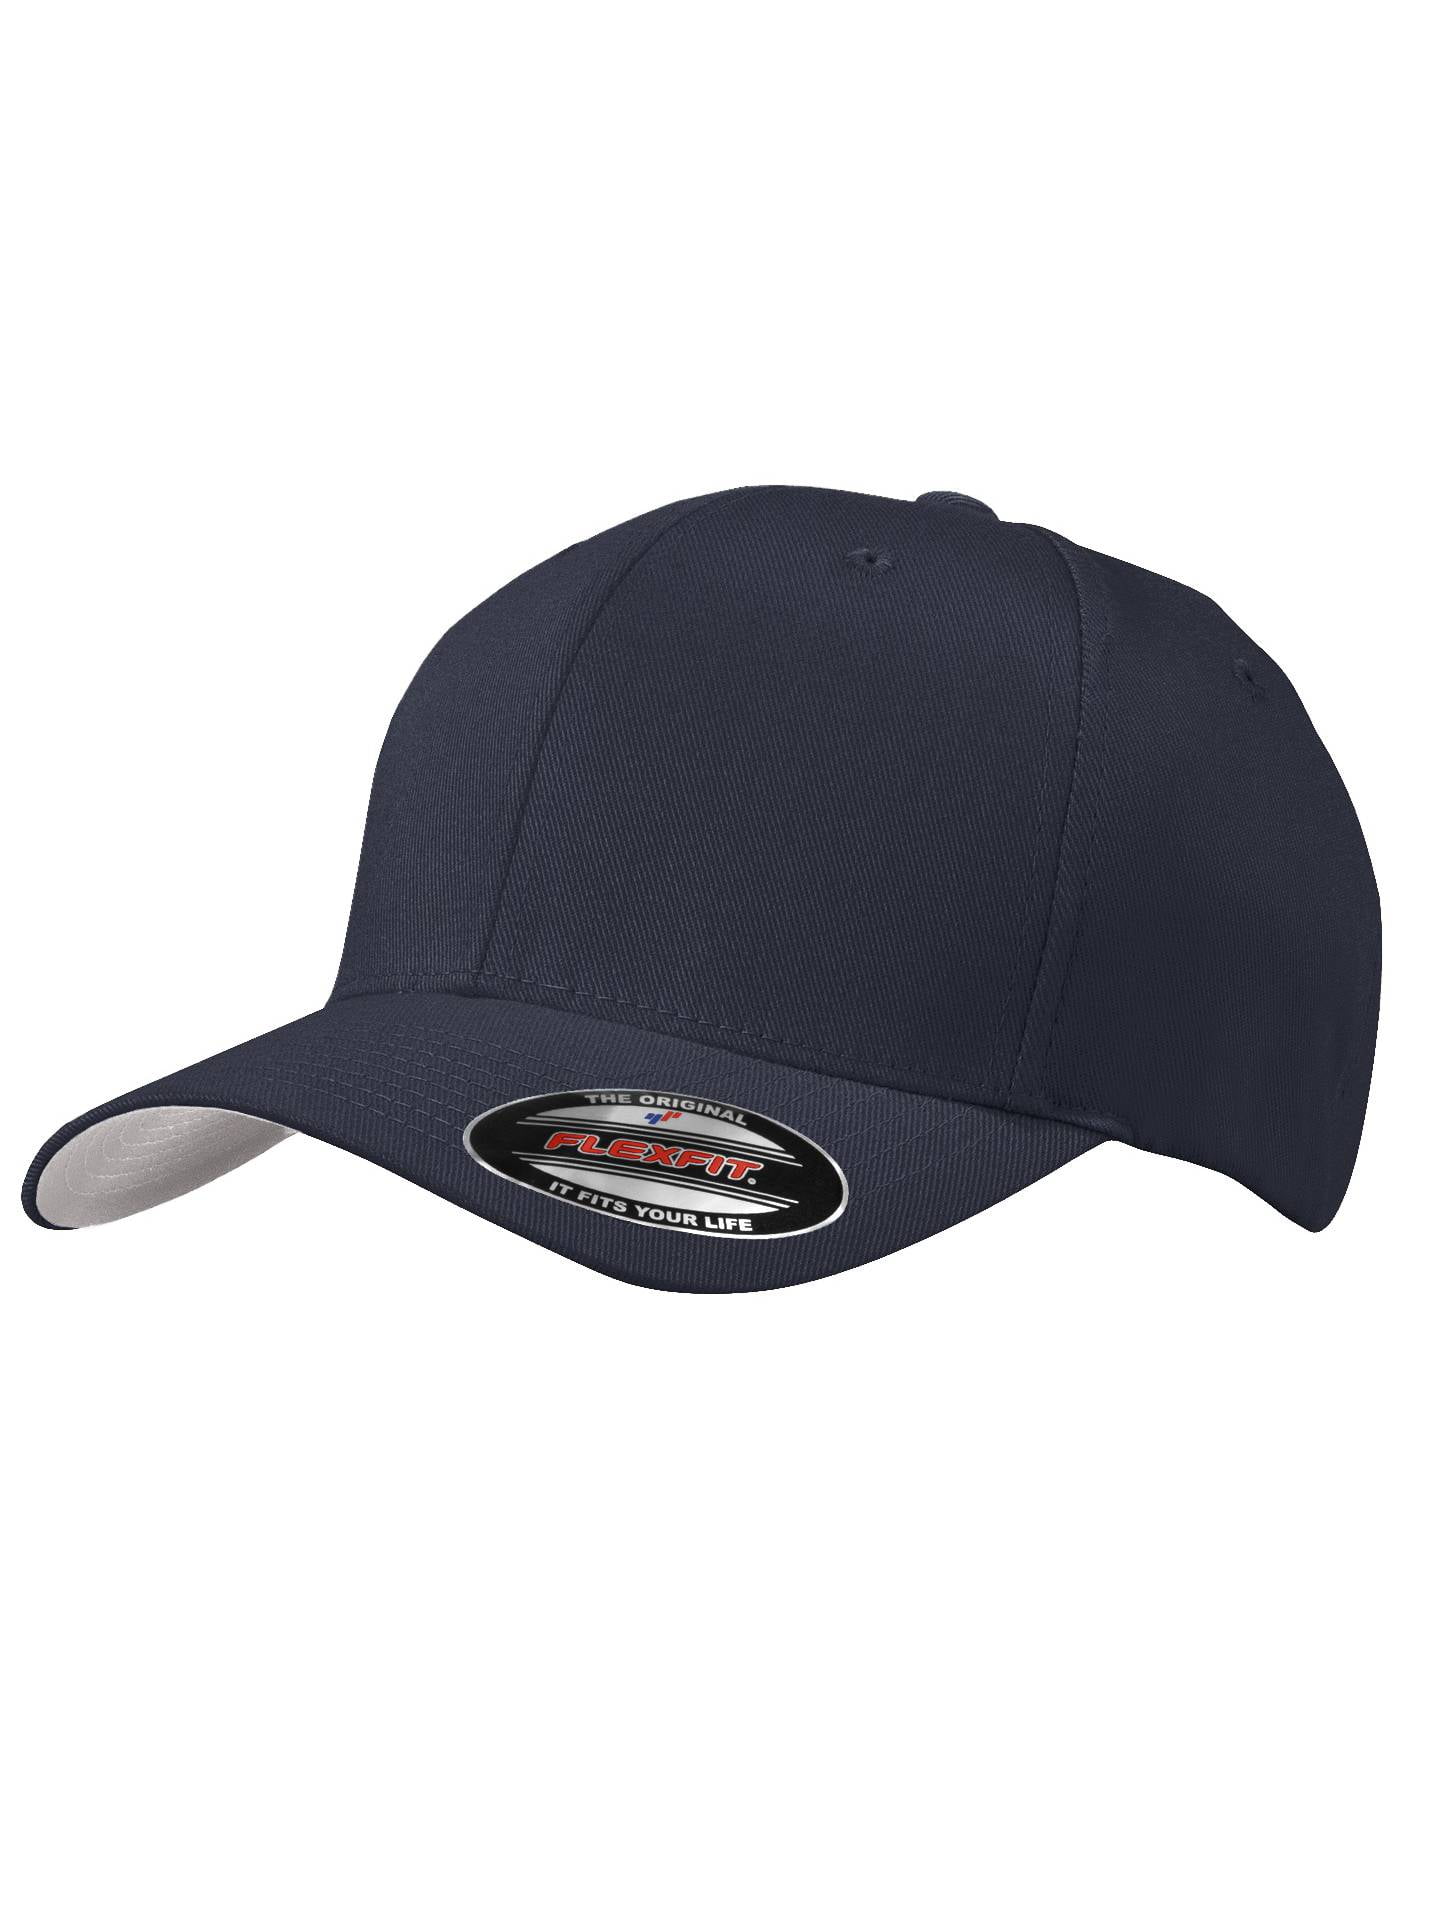 Fit Small/Medium - Flex Top - Headwear Cap Drab/Green Baseball Olive